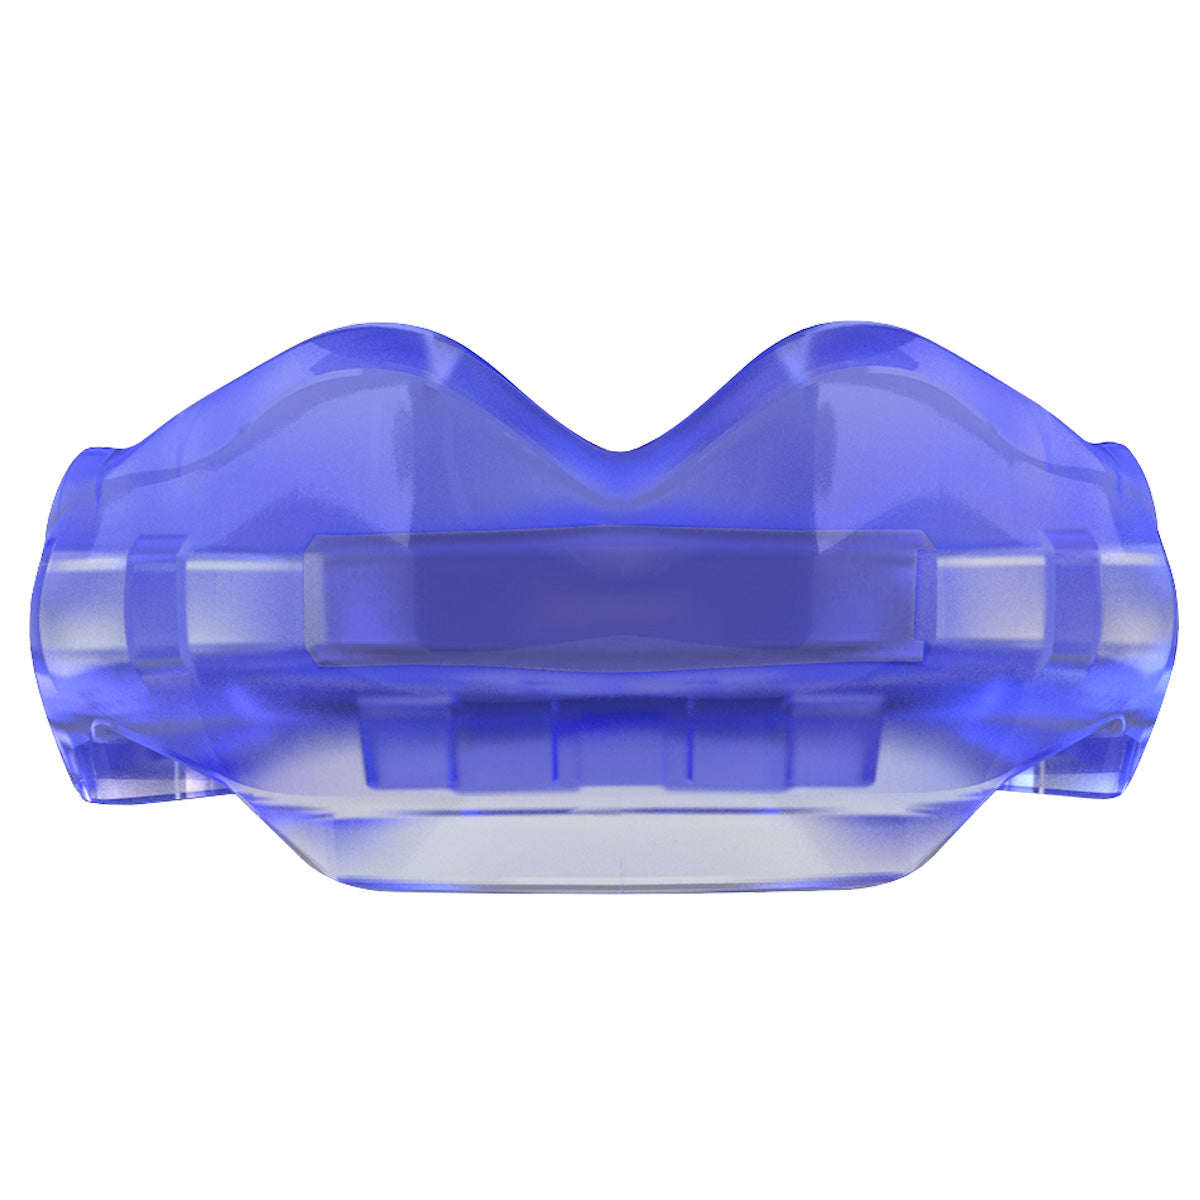 SAFEJAWZ Ortho Series Selbstanpassender Mundschutz für Zahnspangen - blau